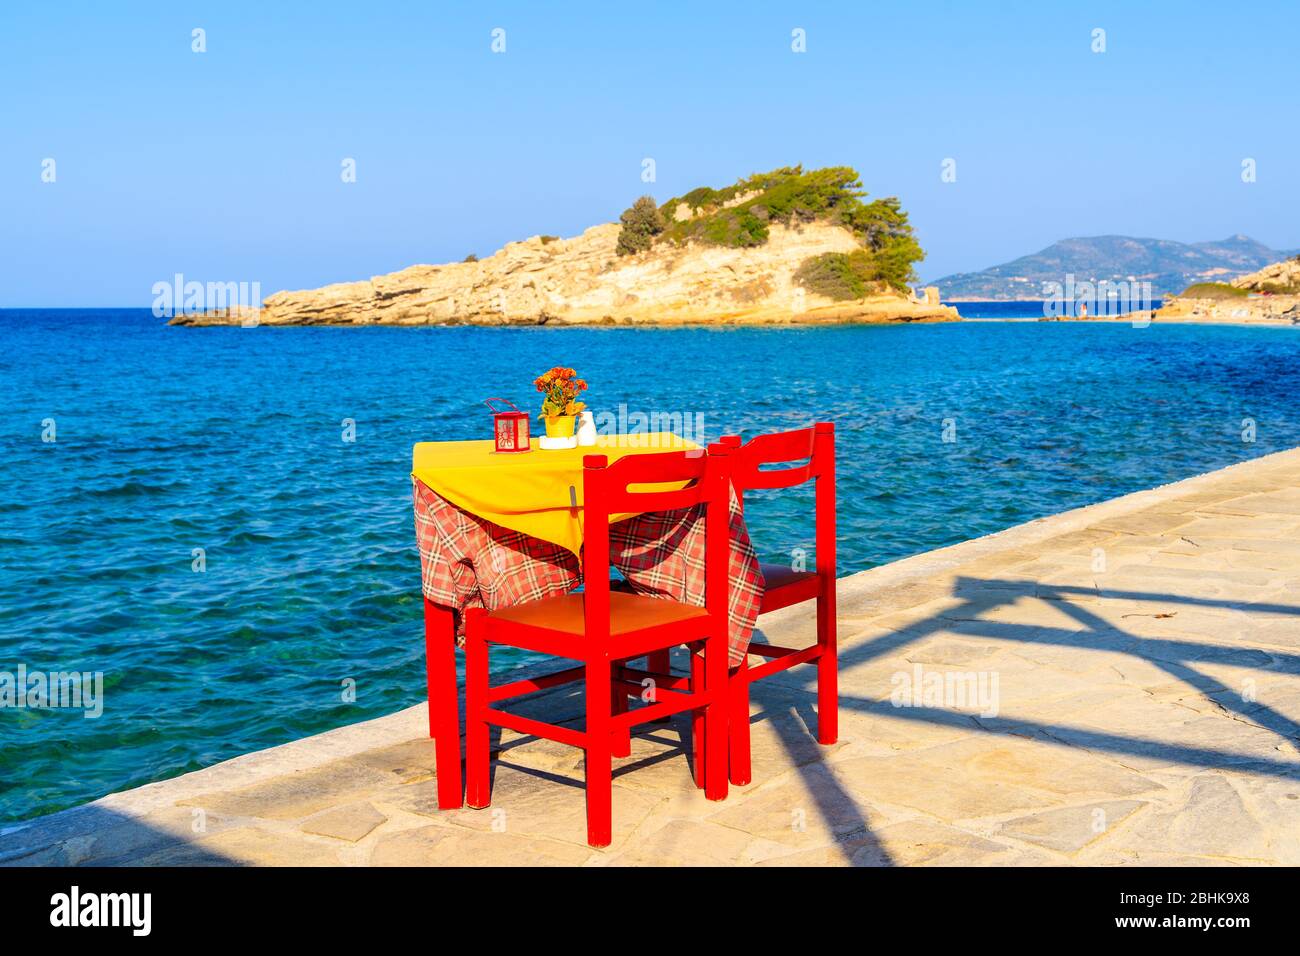 Taverna tavolo con sedie rosse sulla passeggiata costiera con il mare sullo sfondo nel villaggio di Kokkari, isola di Samos, Grecia Foto Stock